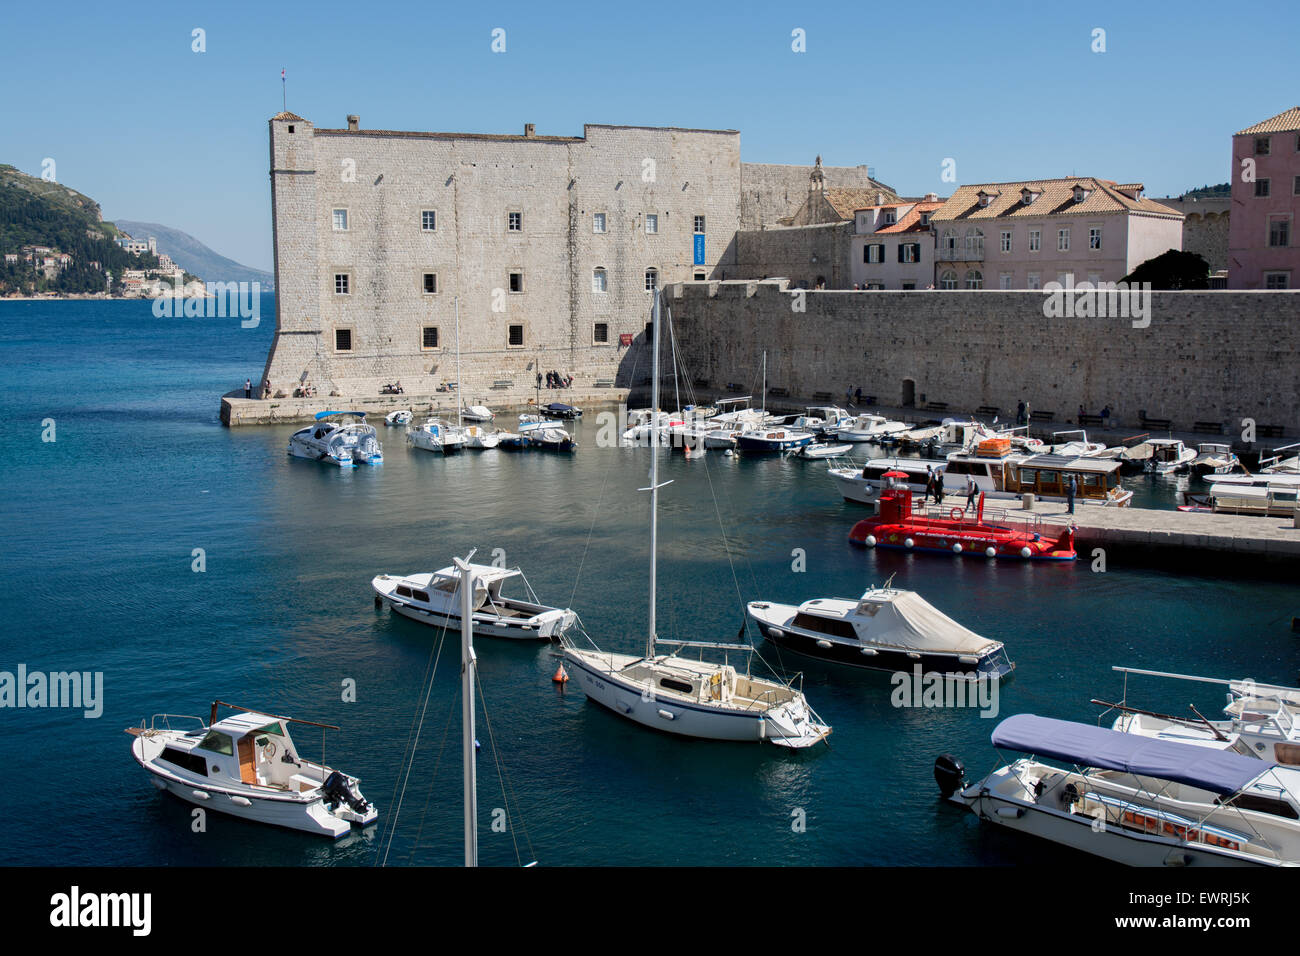 Vieille Ville avec port st. john's fort en arrière-plan, Dubrovnik, Croatie Banque D'Images